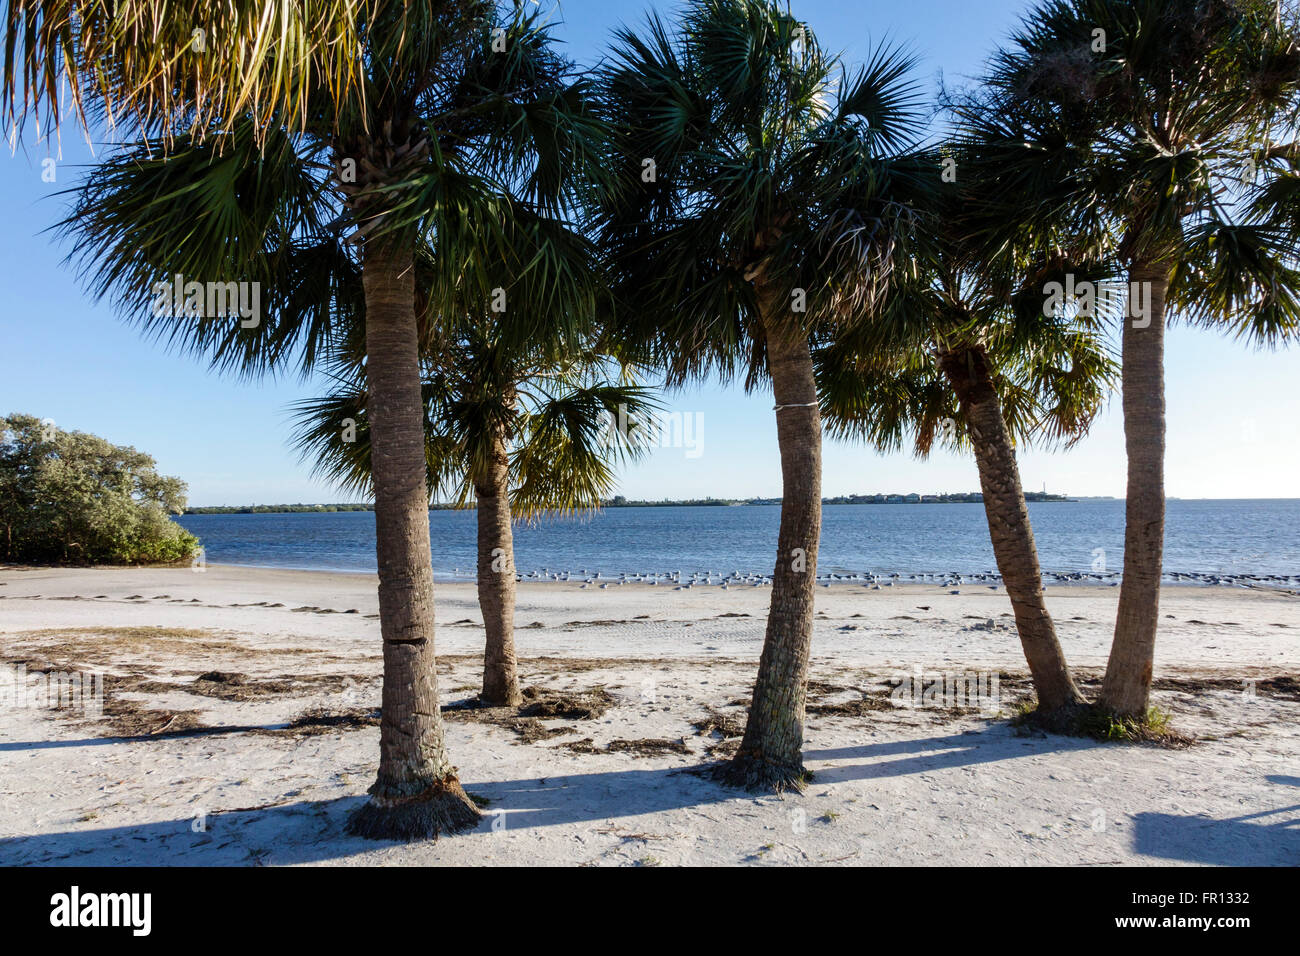 Florida New Port Richey, Green Key, Robert K Rees Memorial Park, Golf von Mexiko, öffentlicher Strand, Sand, sabalpalmen, Palmen, FL160211041 Stockfoto